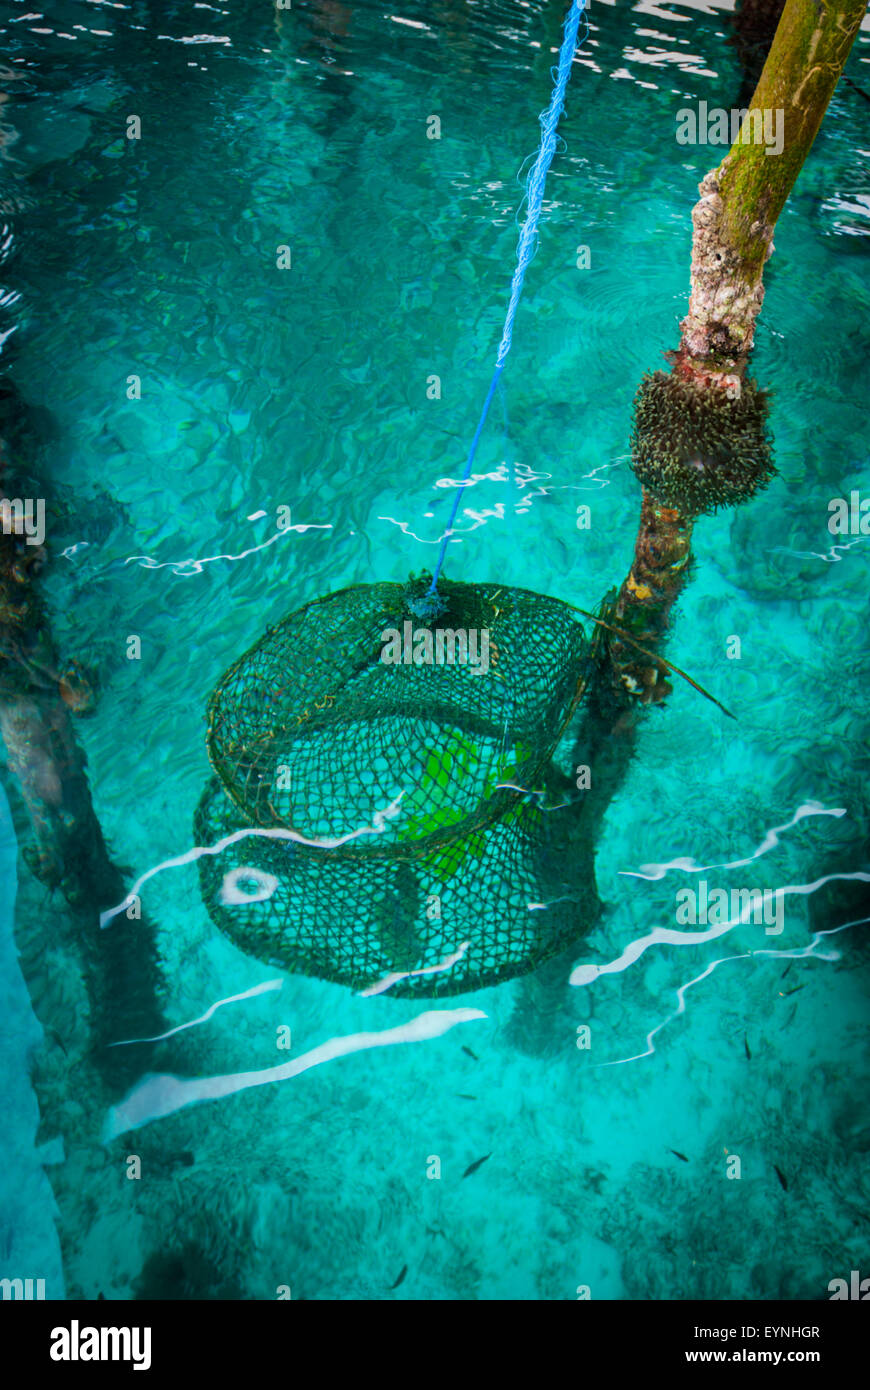 Piège à poissons pour l'aquaculture dans l'île Arborek, une petite île située dans la zone marine protégée du détroit de Dampier, Raja Ampat. Banque D'Images